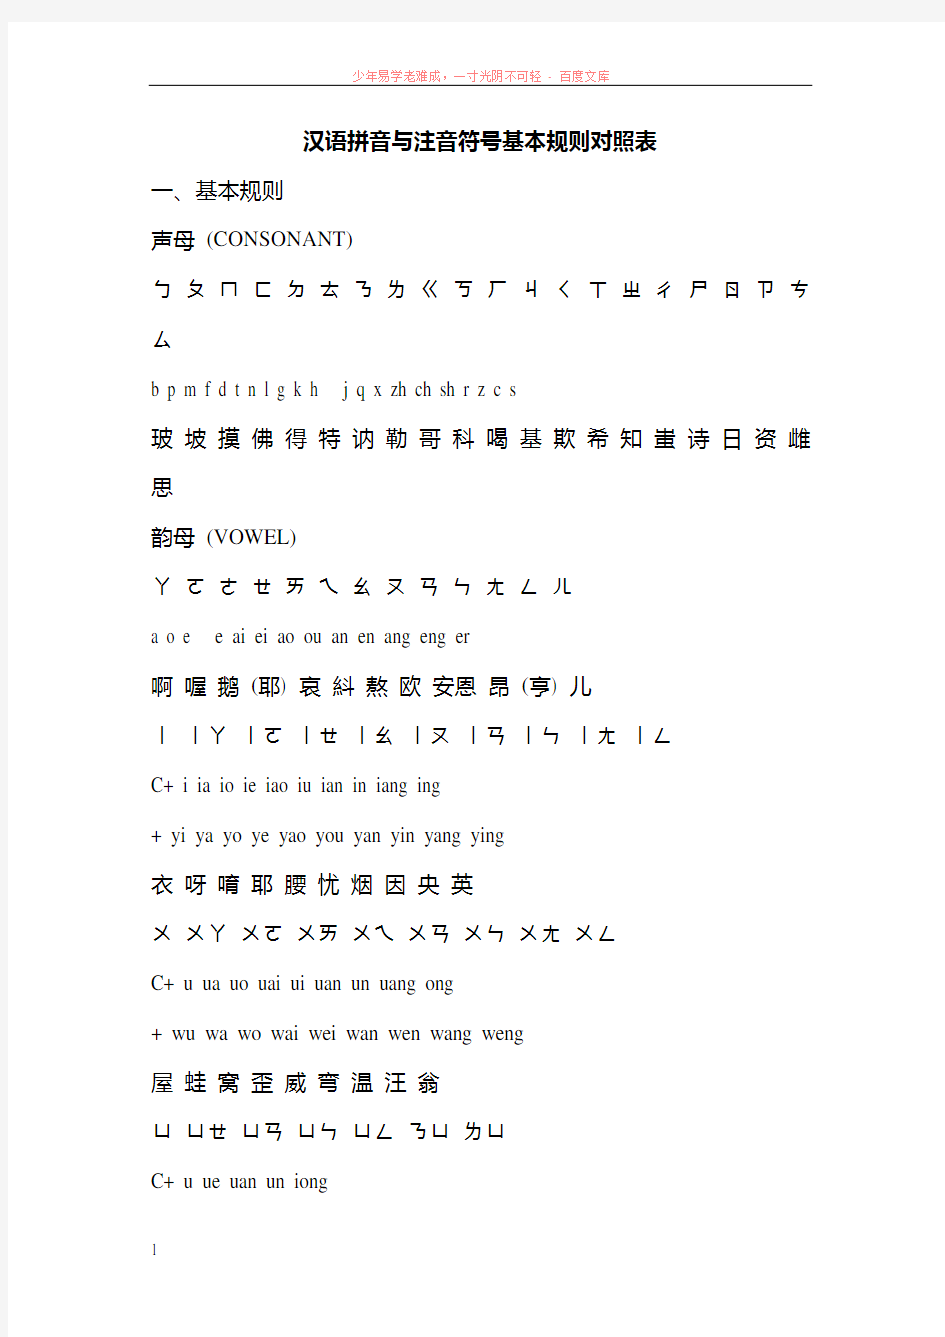 汉语拼音与注音符号基本规则对照表